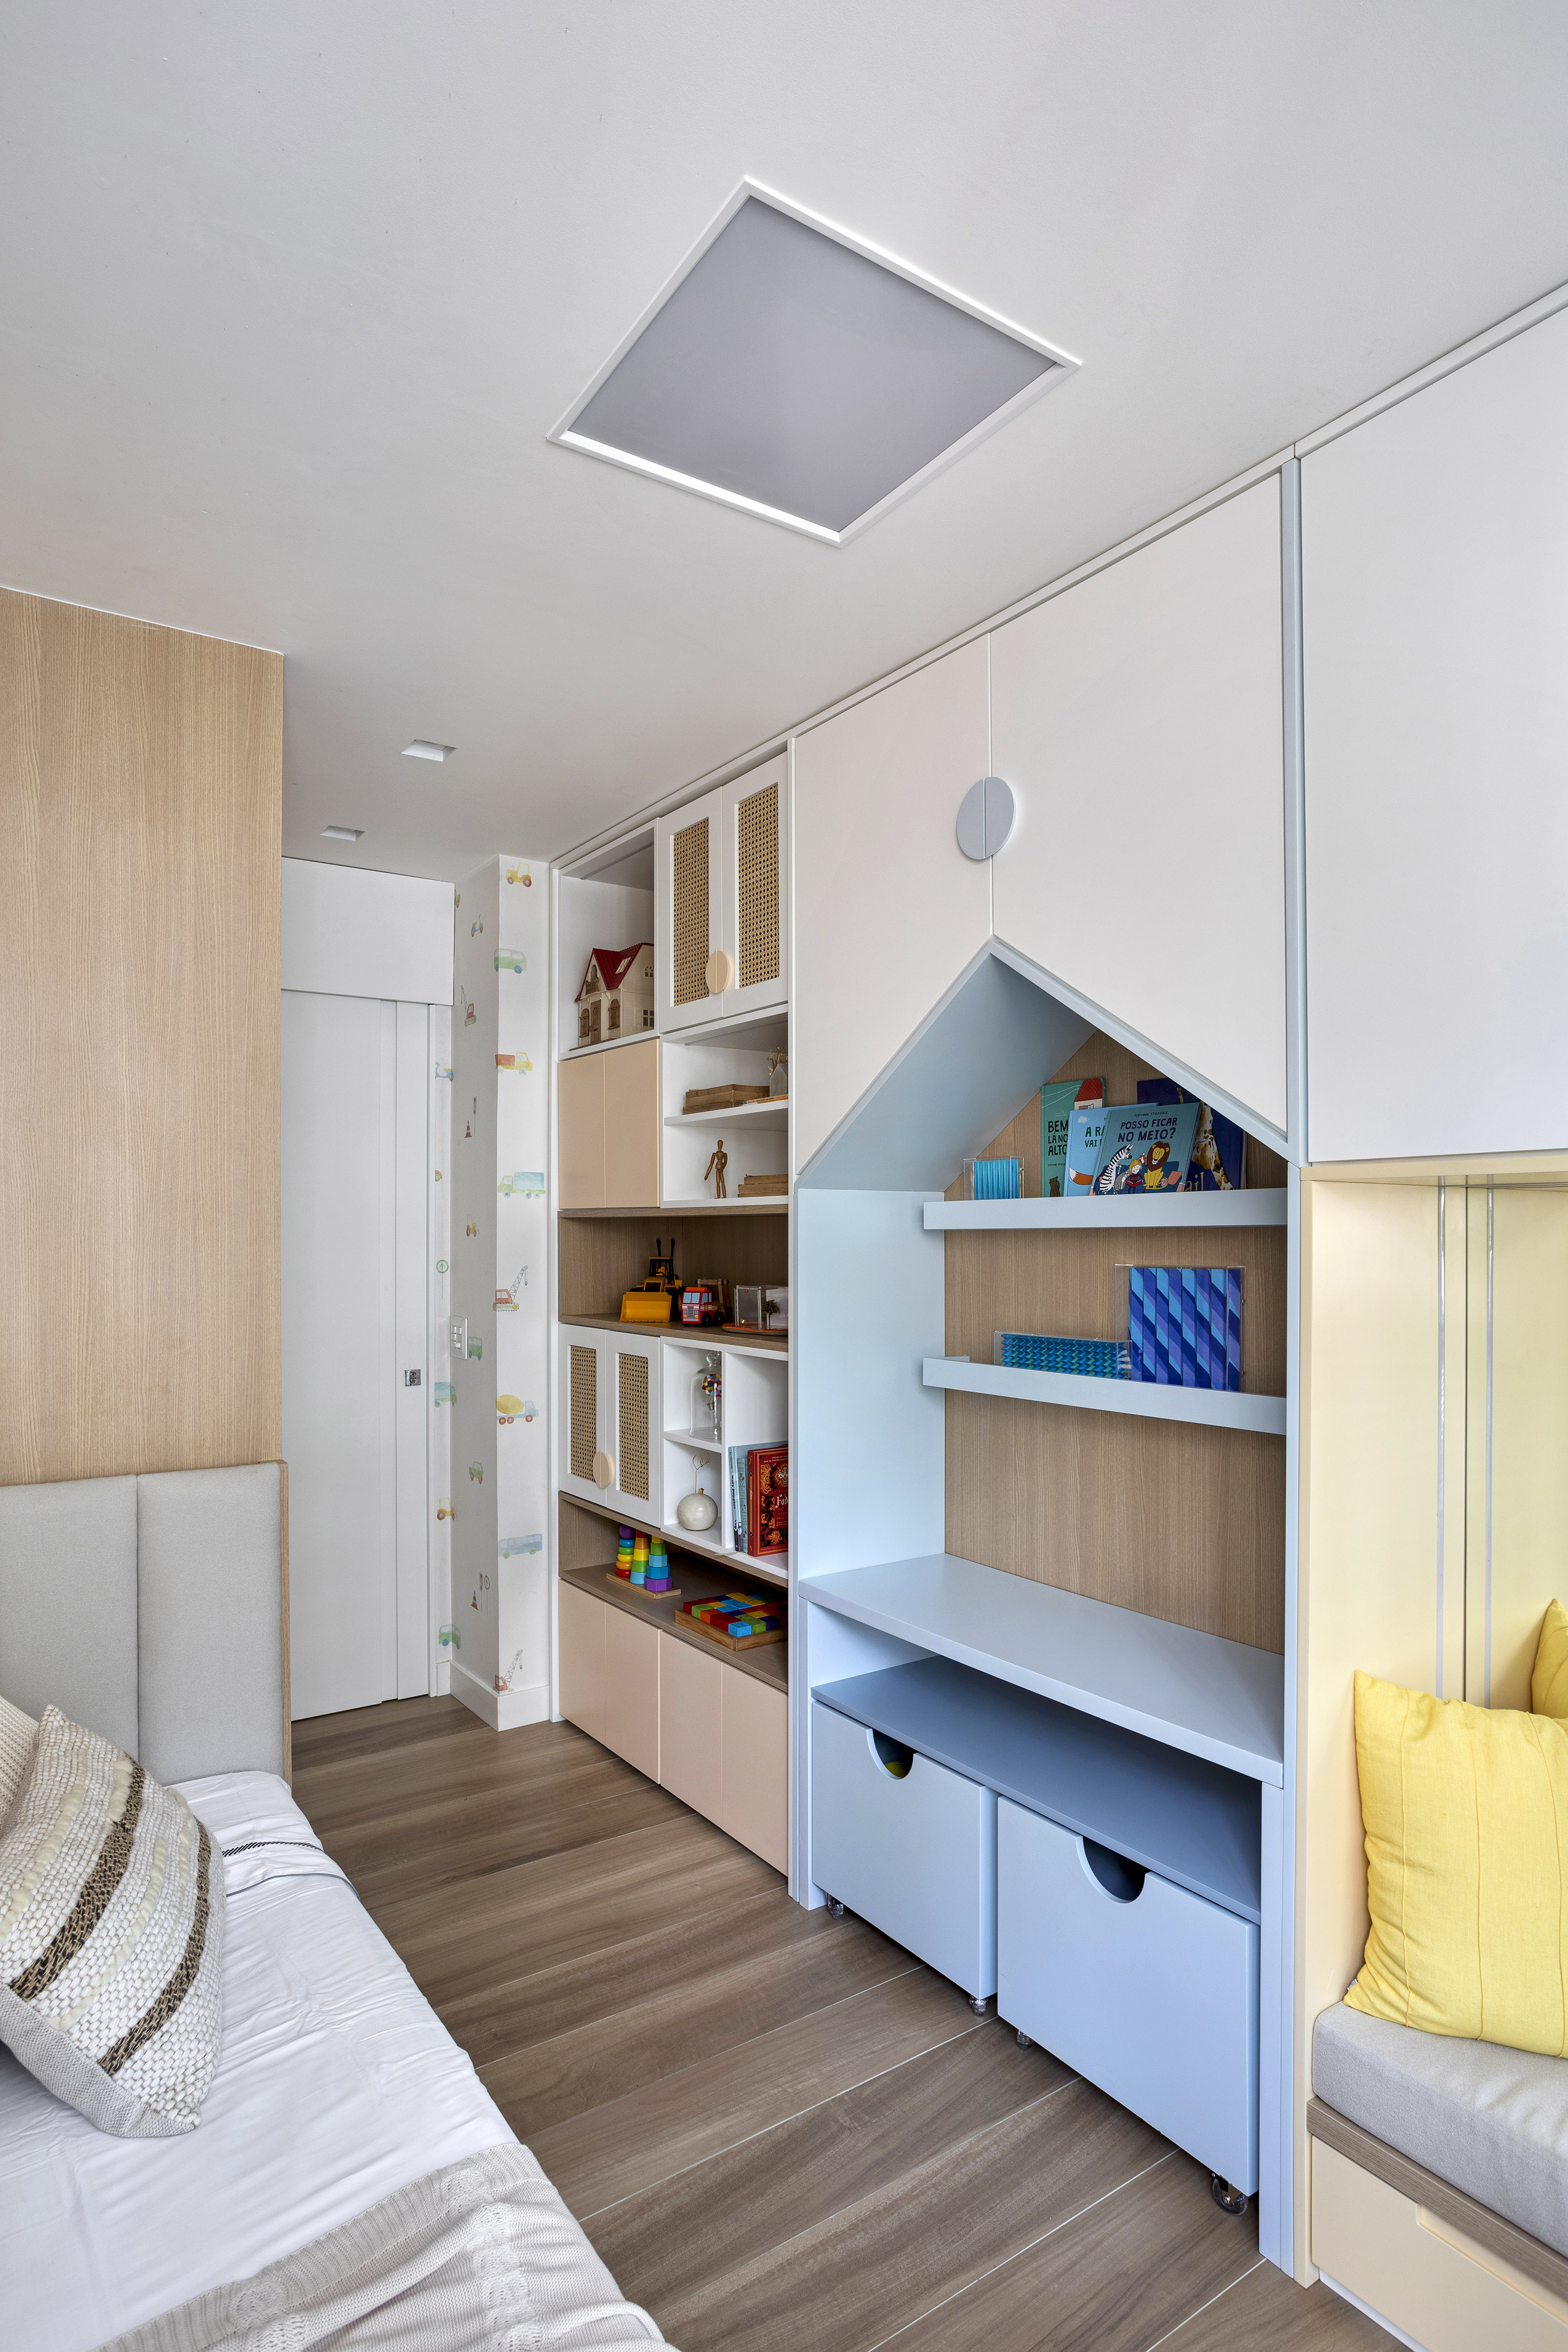 Apartamento de 70 m² parece maior com décor em tons neutros. Projeto de Fabiano Ravaglia. Na foto, quarto infantil com marcenaria colorida.